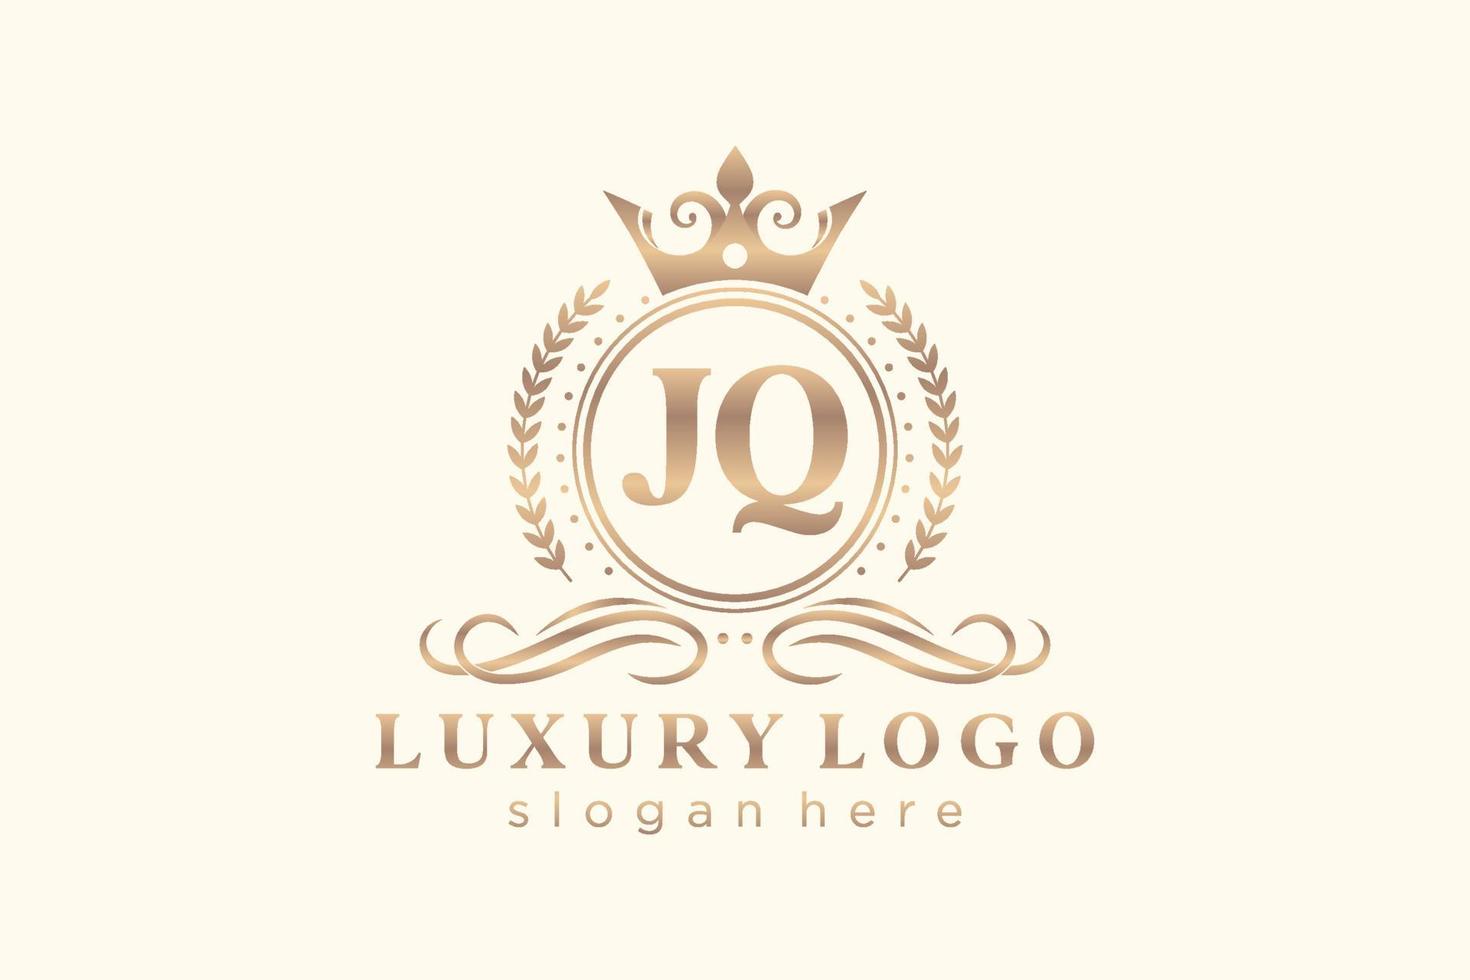 Anfangsbuchstabe jq royal Luxus Logo Vorlage in Vektorgrafiken für Restaurant, Lizenzgebühren, Boutique, Café, Hotel, heraldisch, Schmuck, Mode und andere Vektorillustration. vektor